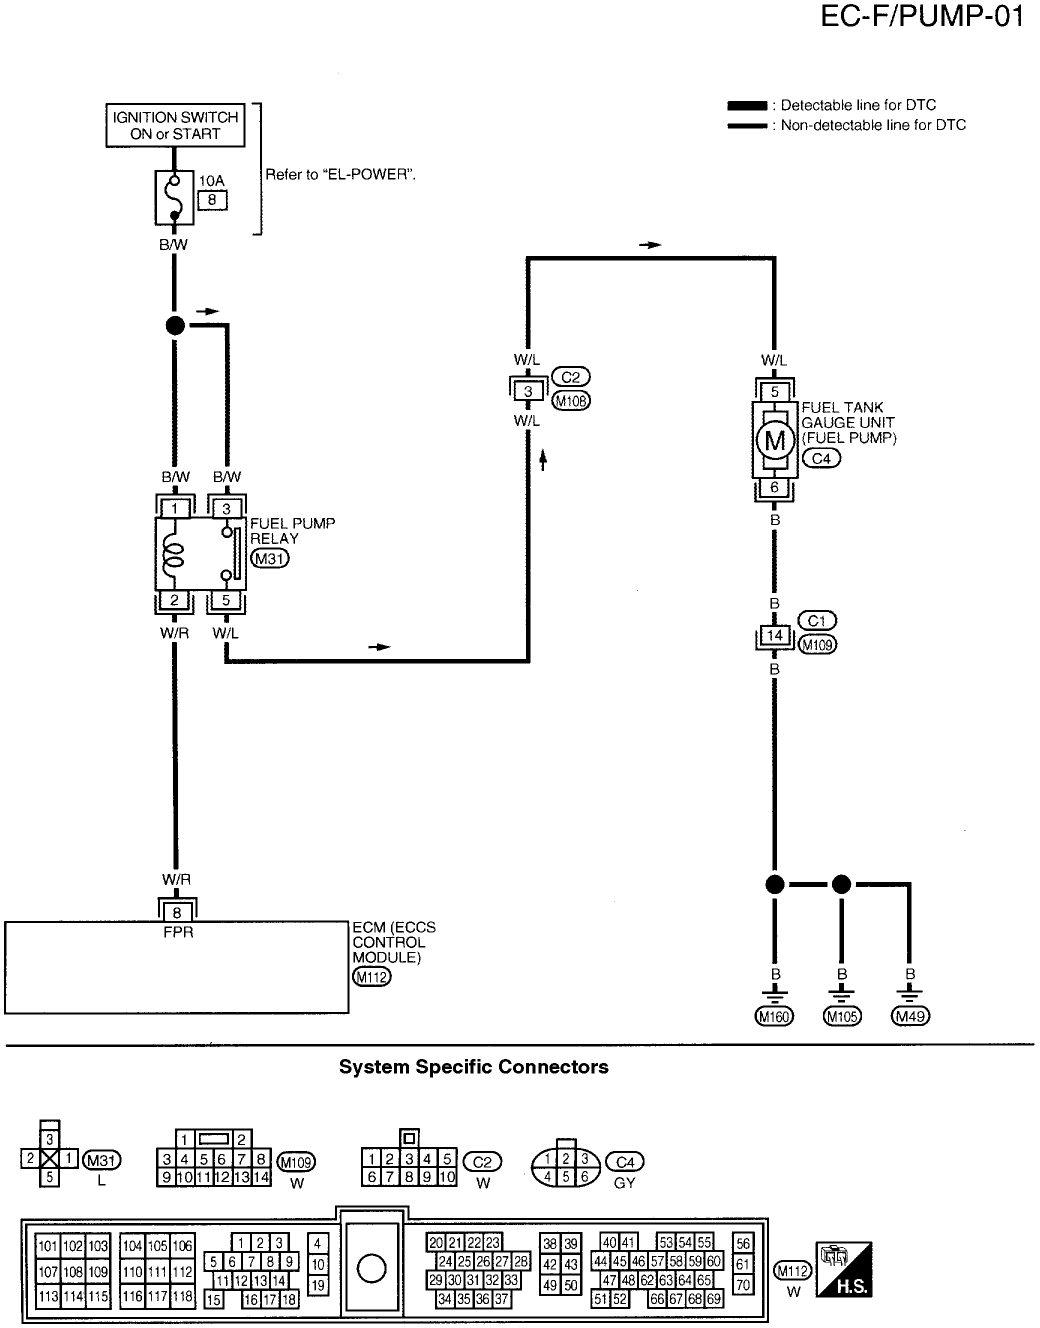 1992 Mack E7 Wiring Diagram